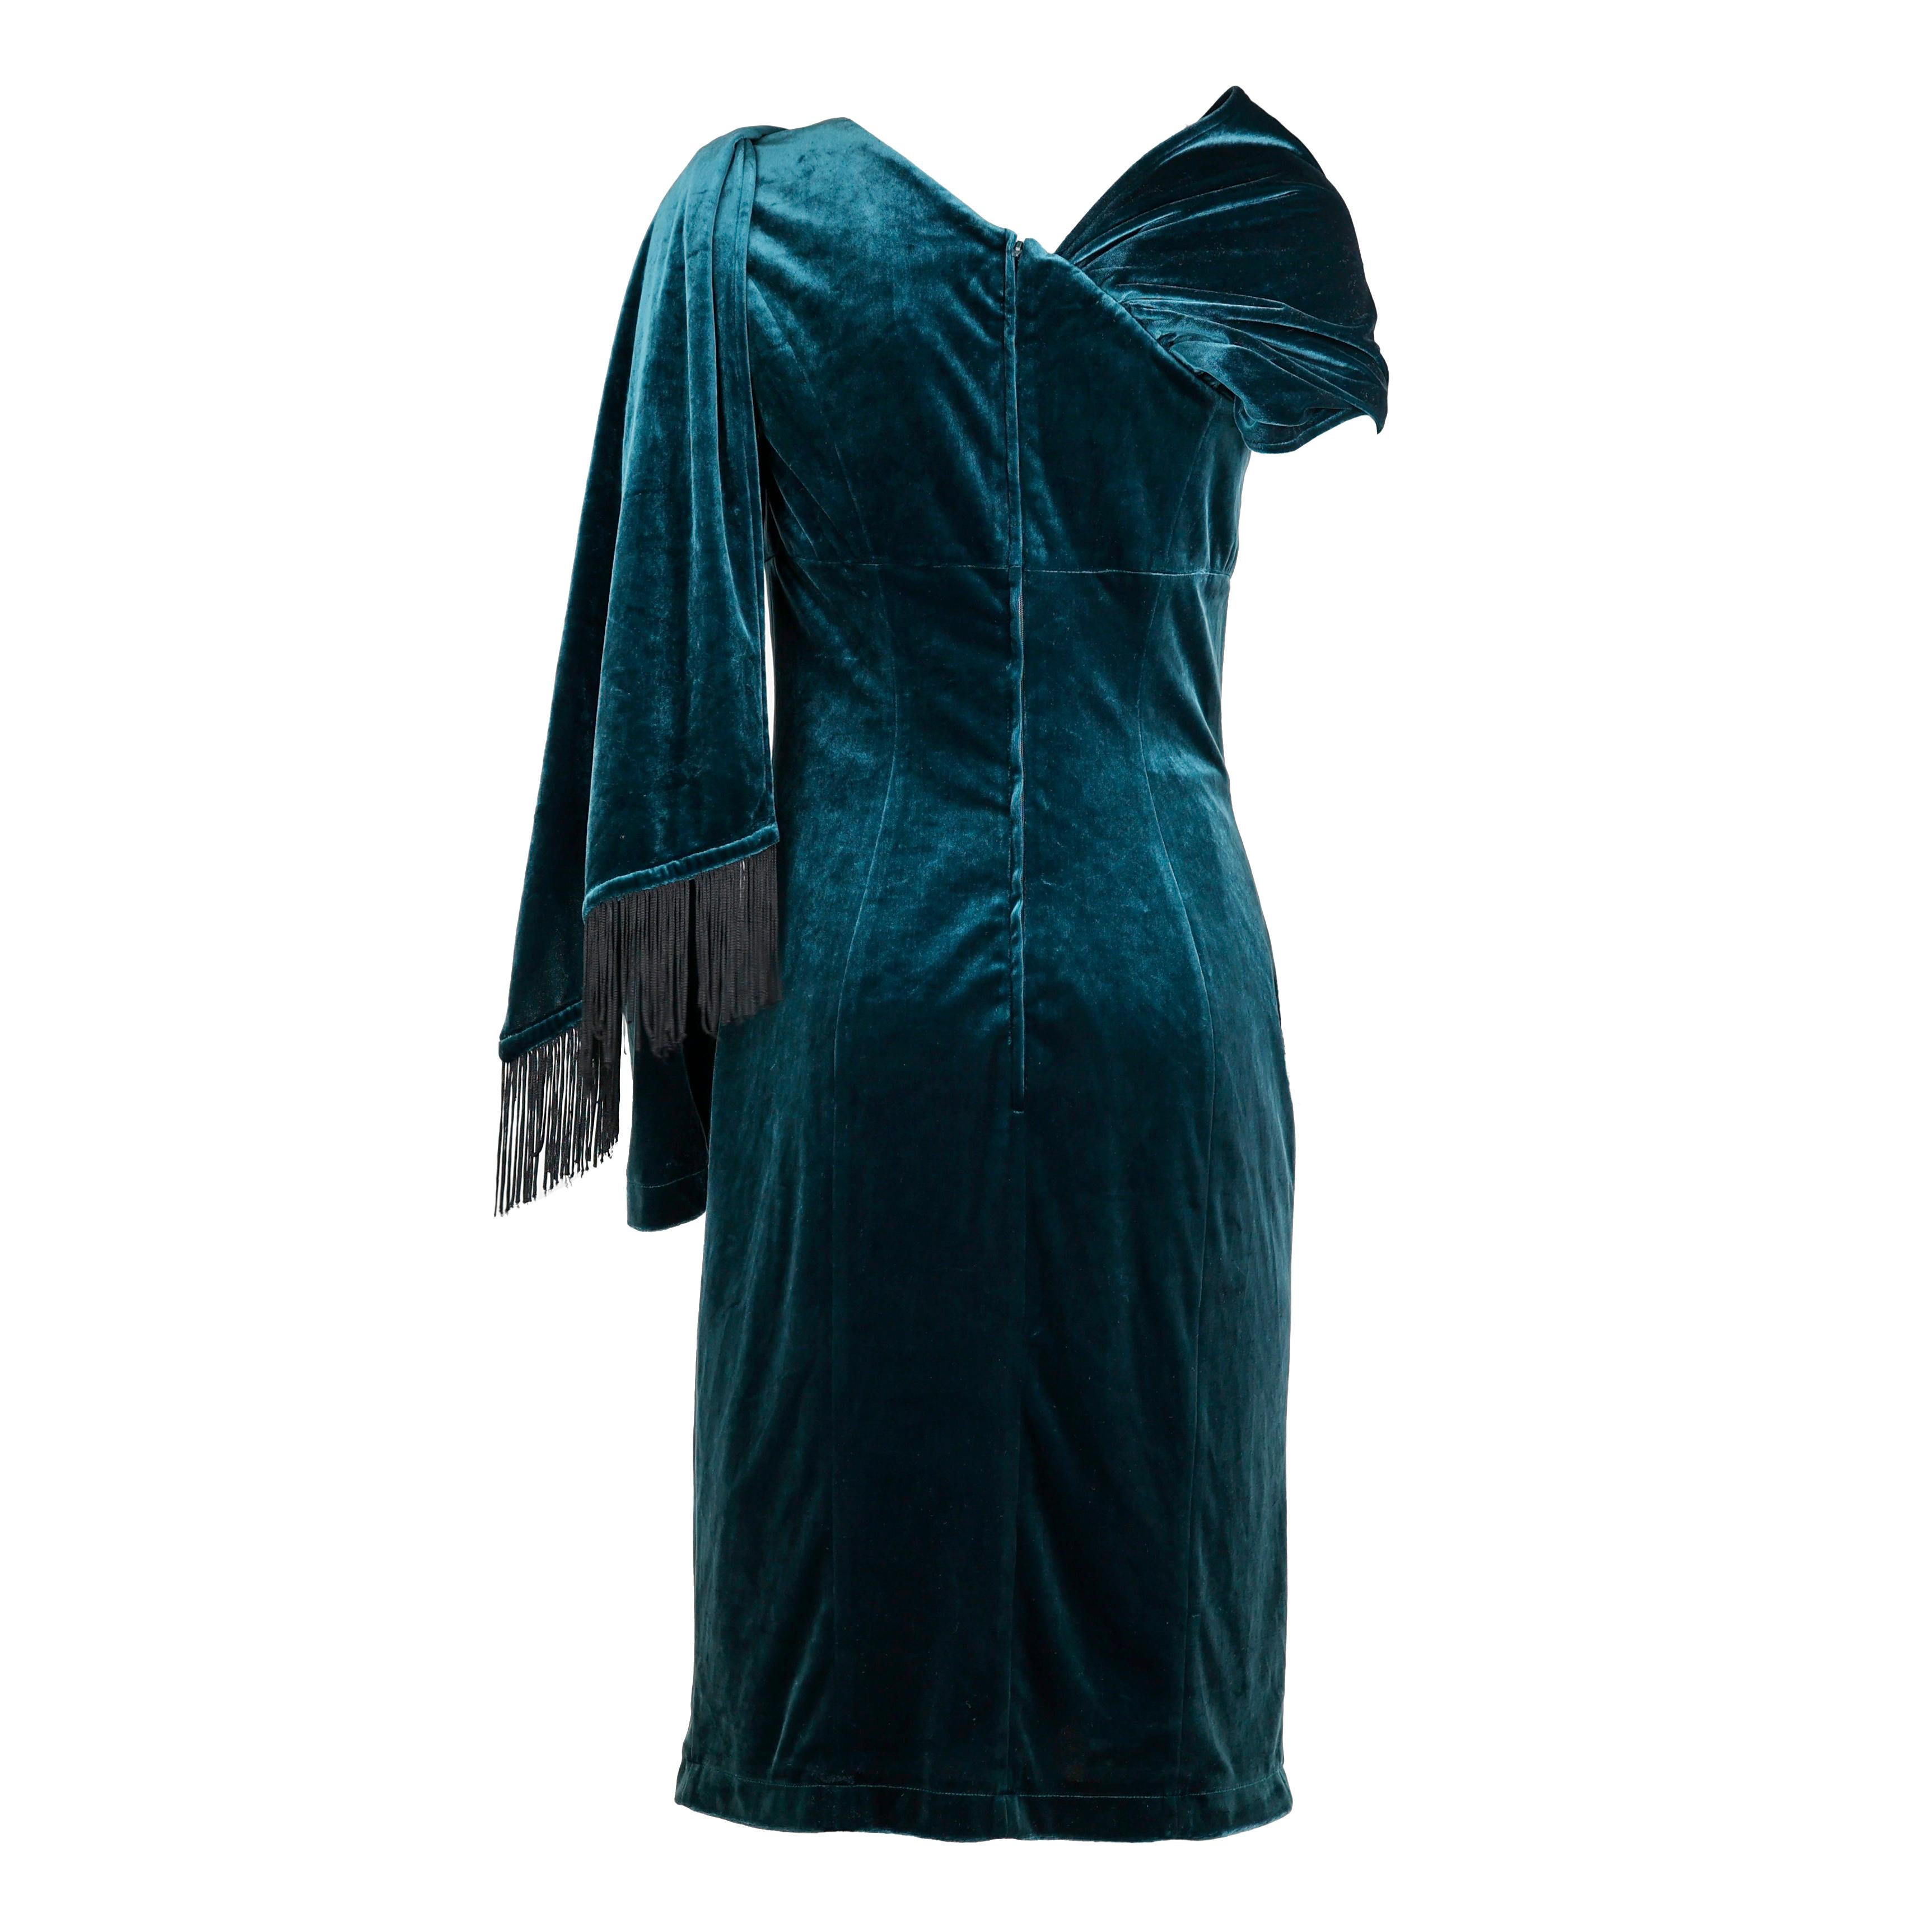 Robe Mugler en velours couleur turquoise, taille S.

Condit :
Vraiment bien.

Emballage/accessoires :
Cintre.